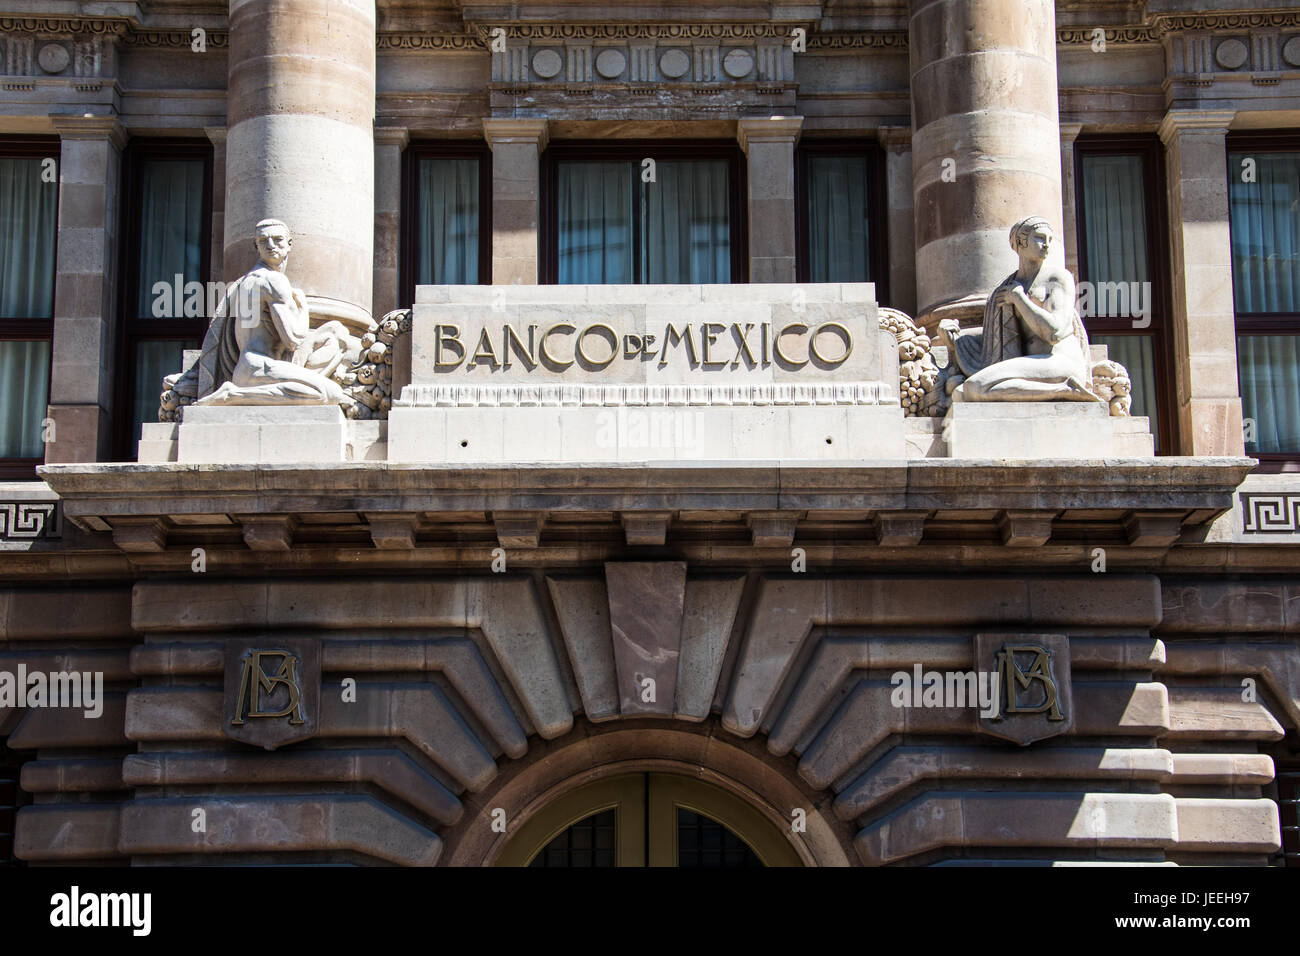 Banco de Mexico building, Mexico City, Mexico Stock Photo